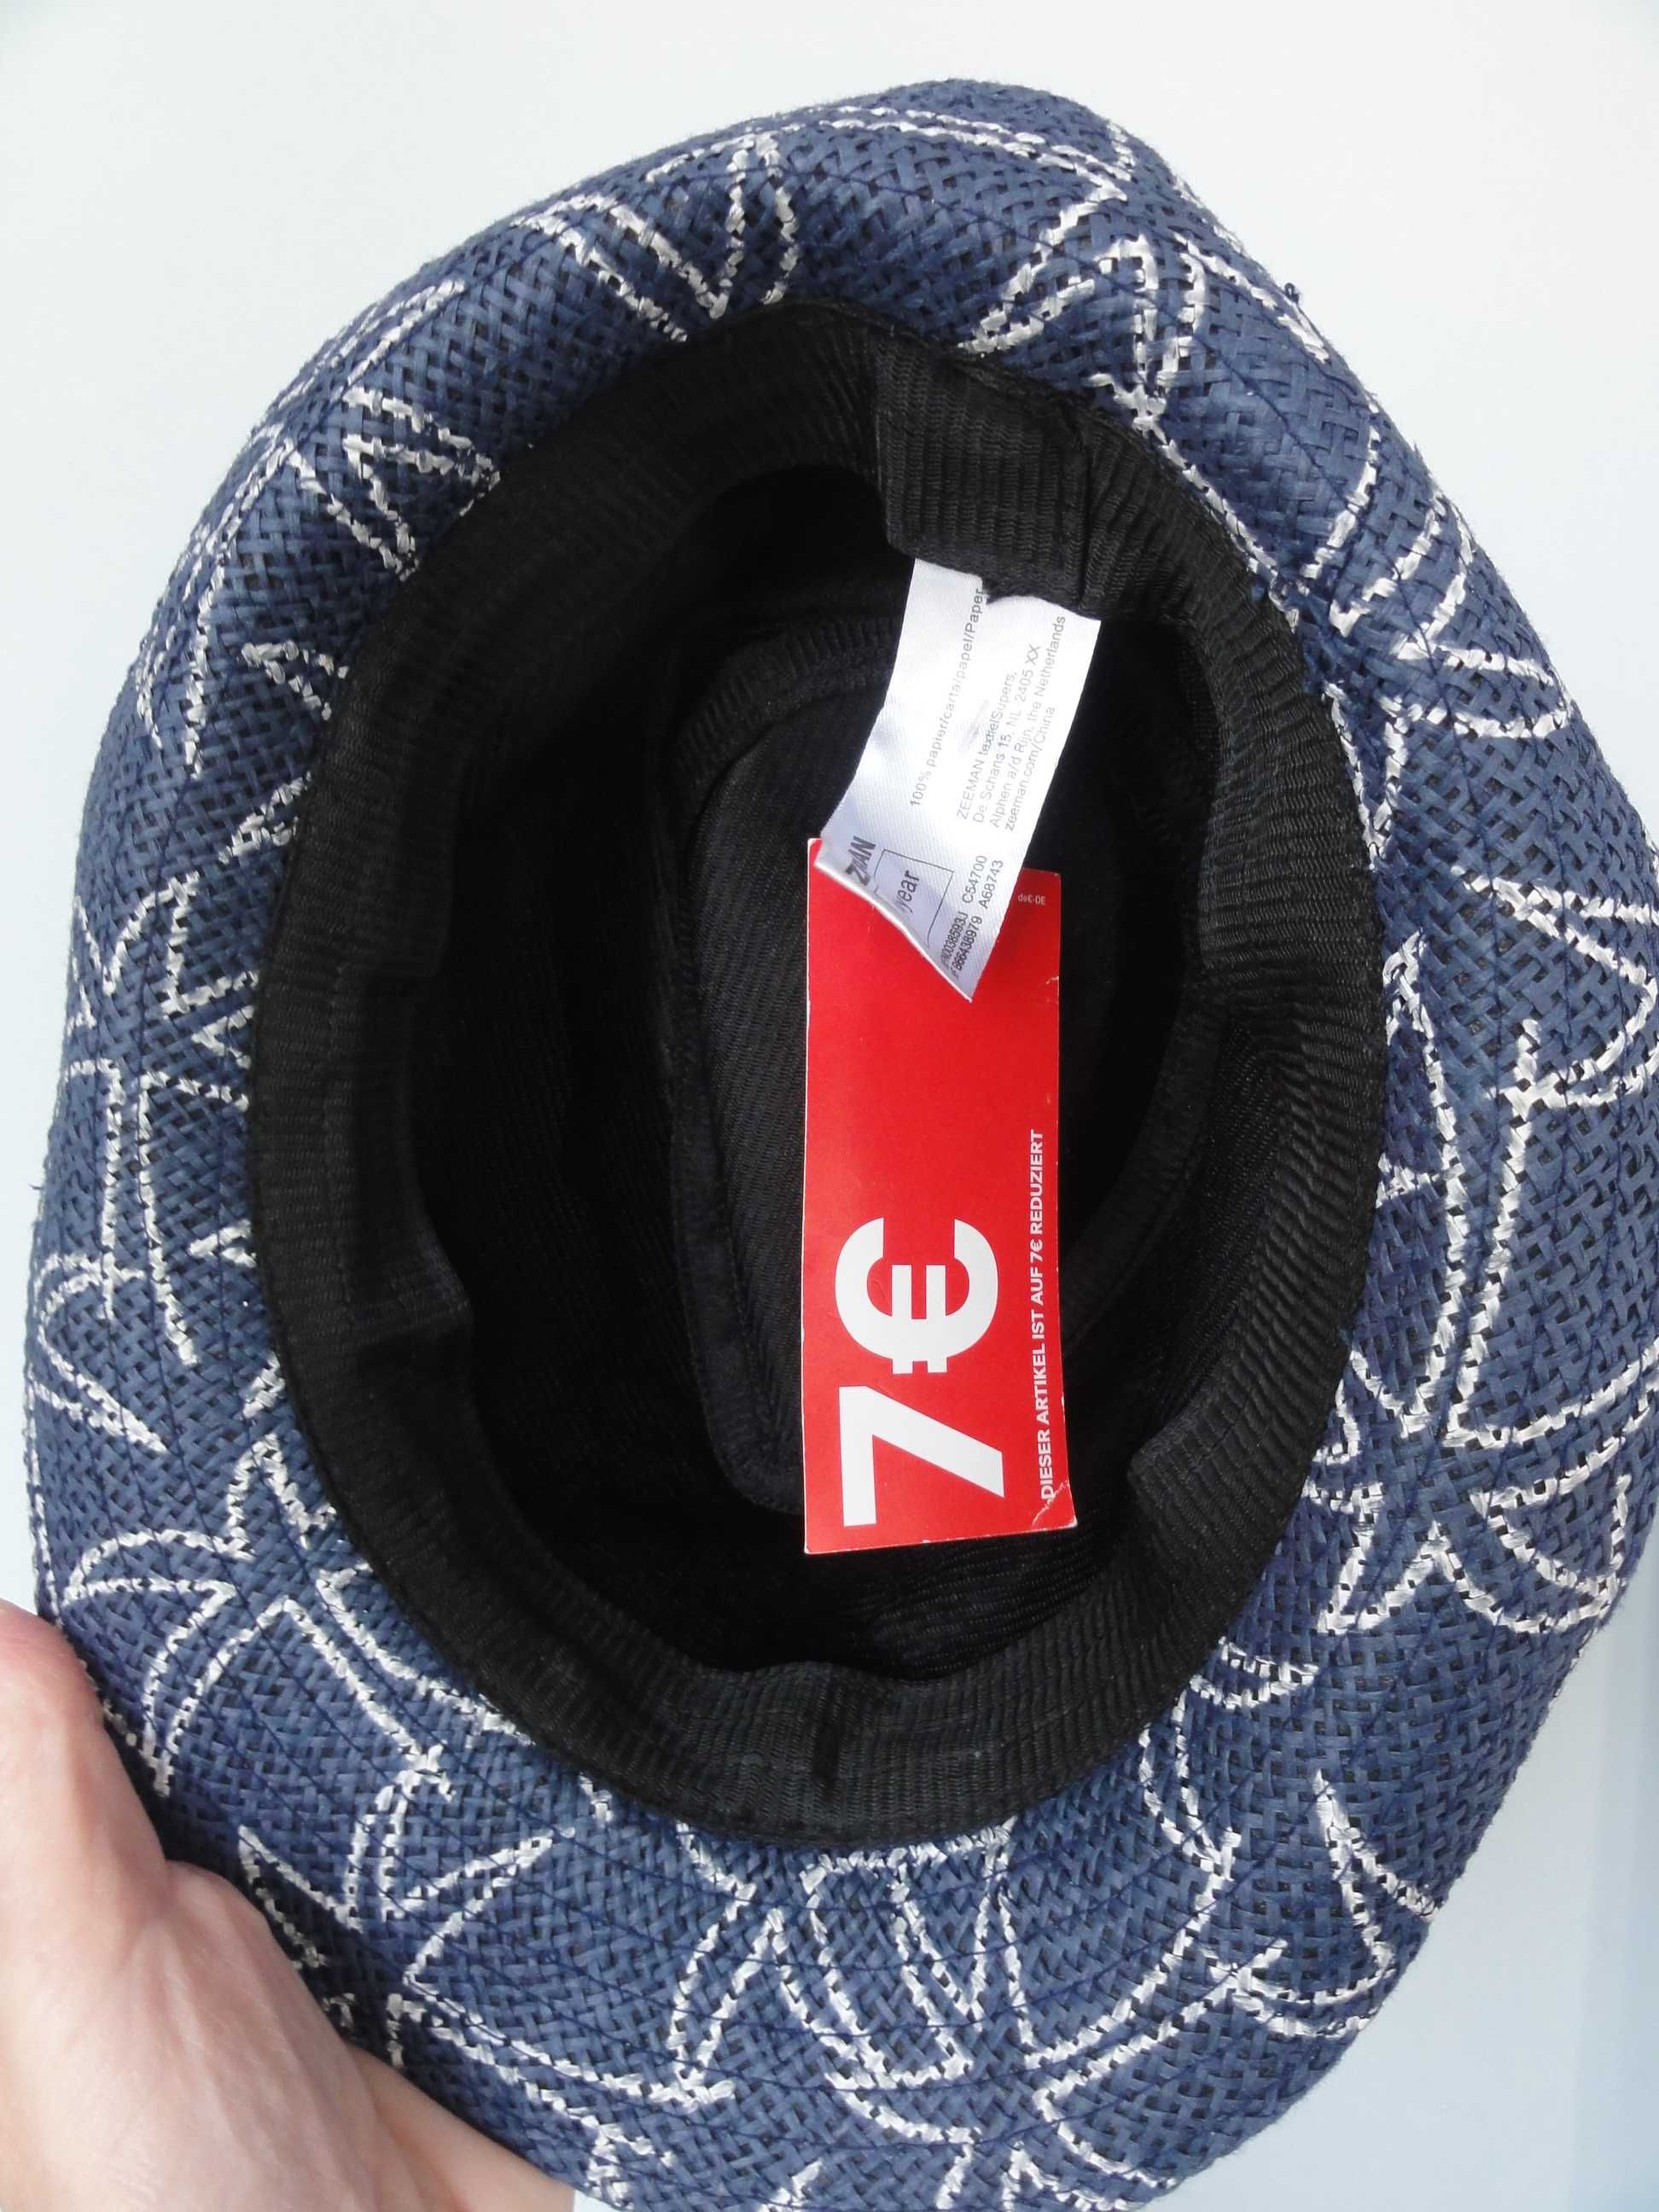 Шляпы стильные: подростковая H&M, малышу ZEEMAN(2-4года).Куплены в EU!